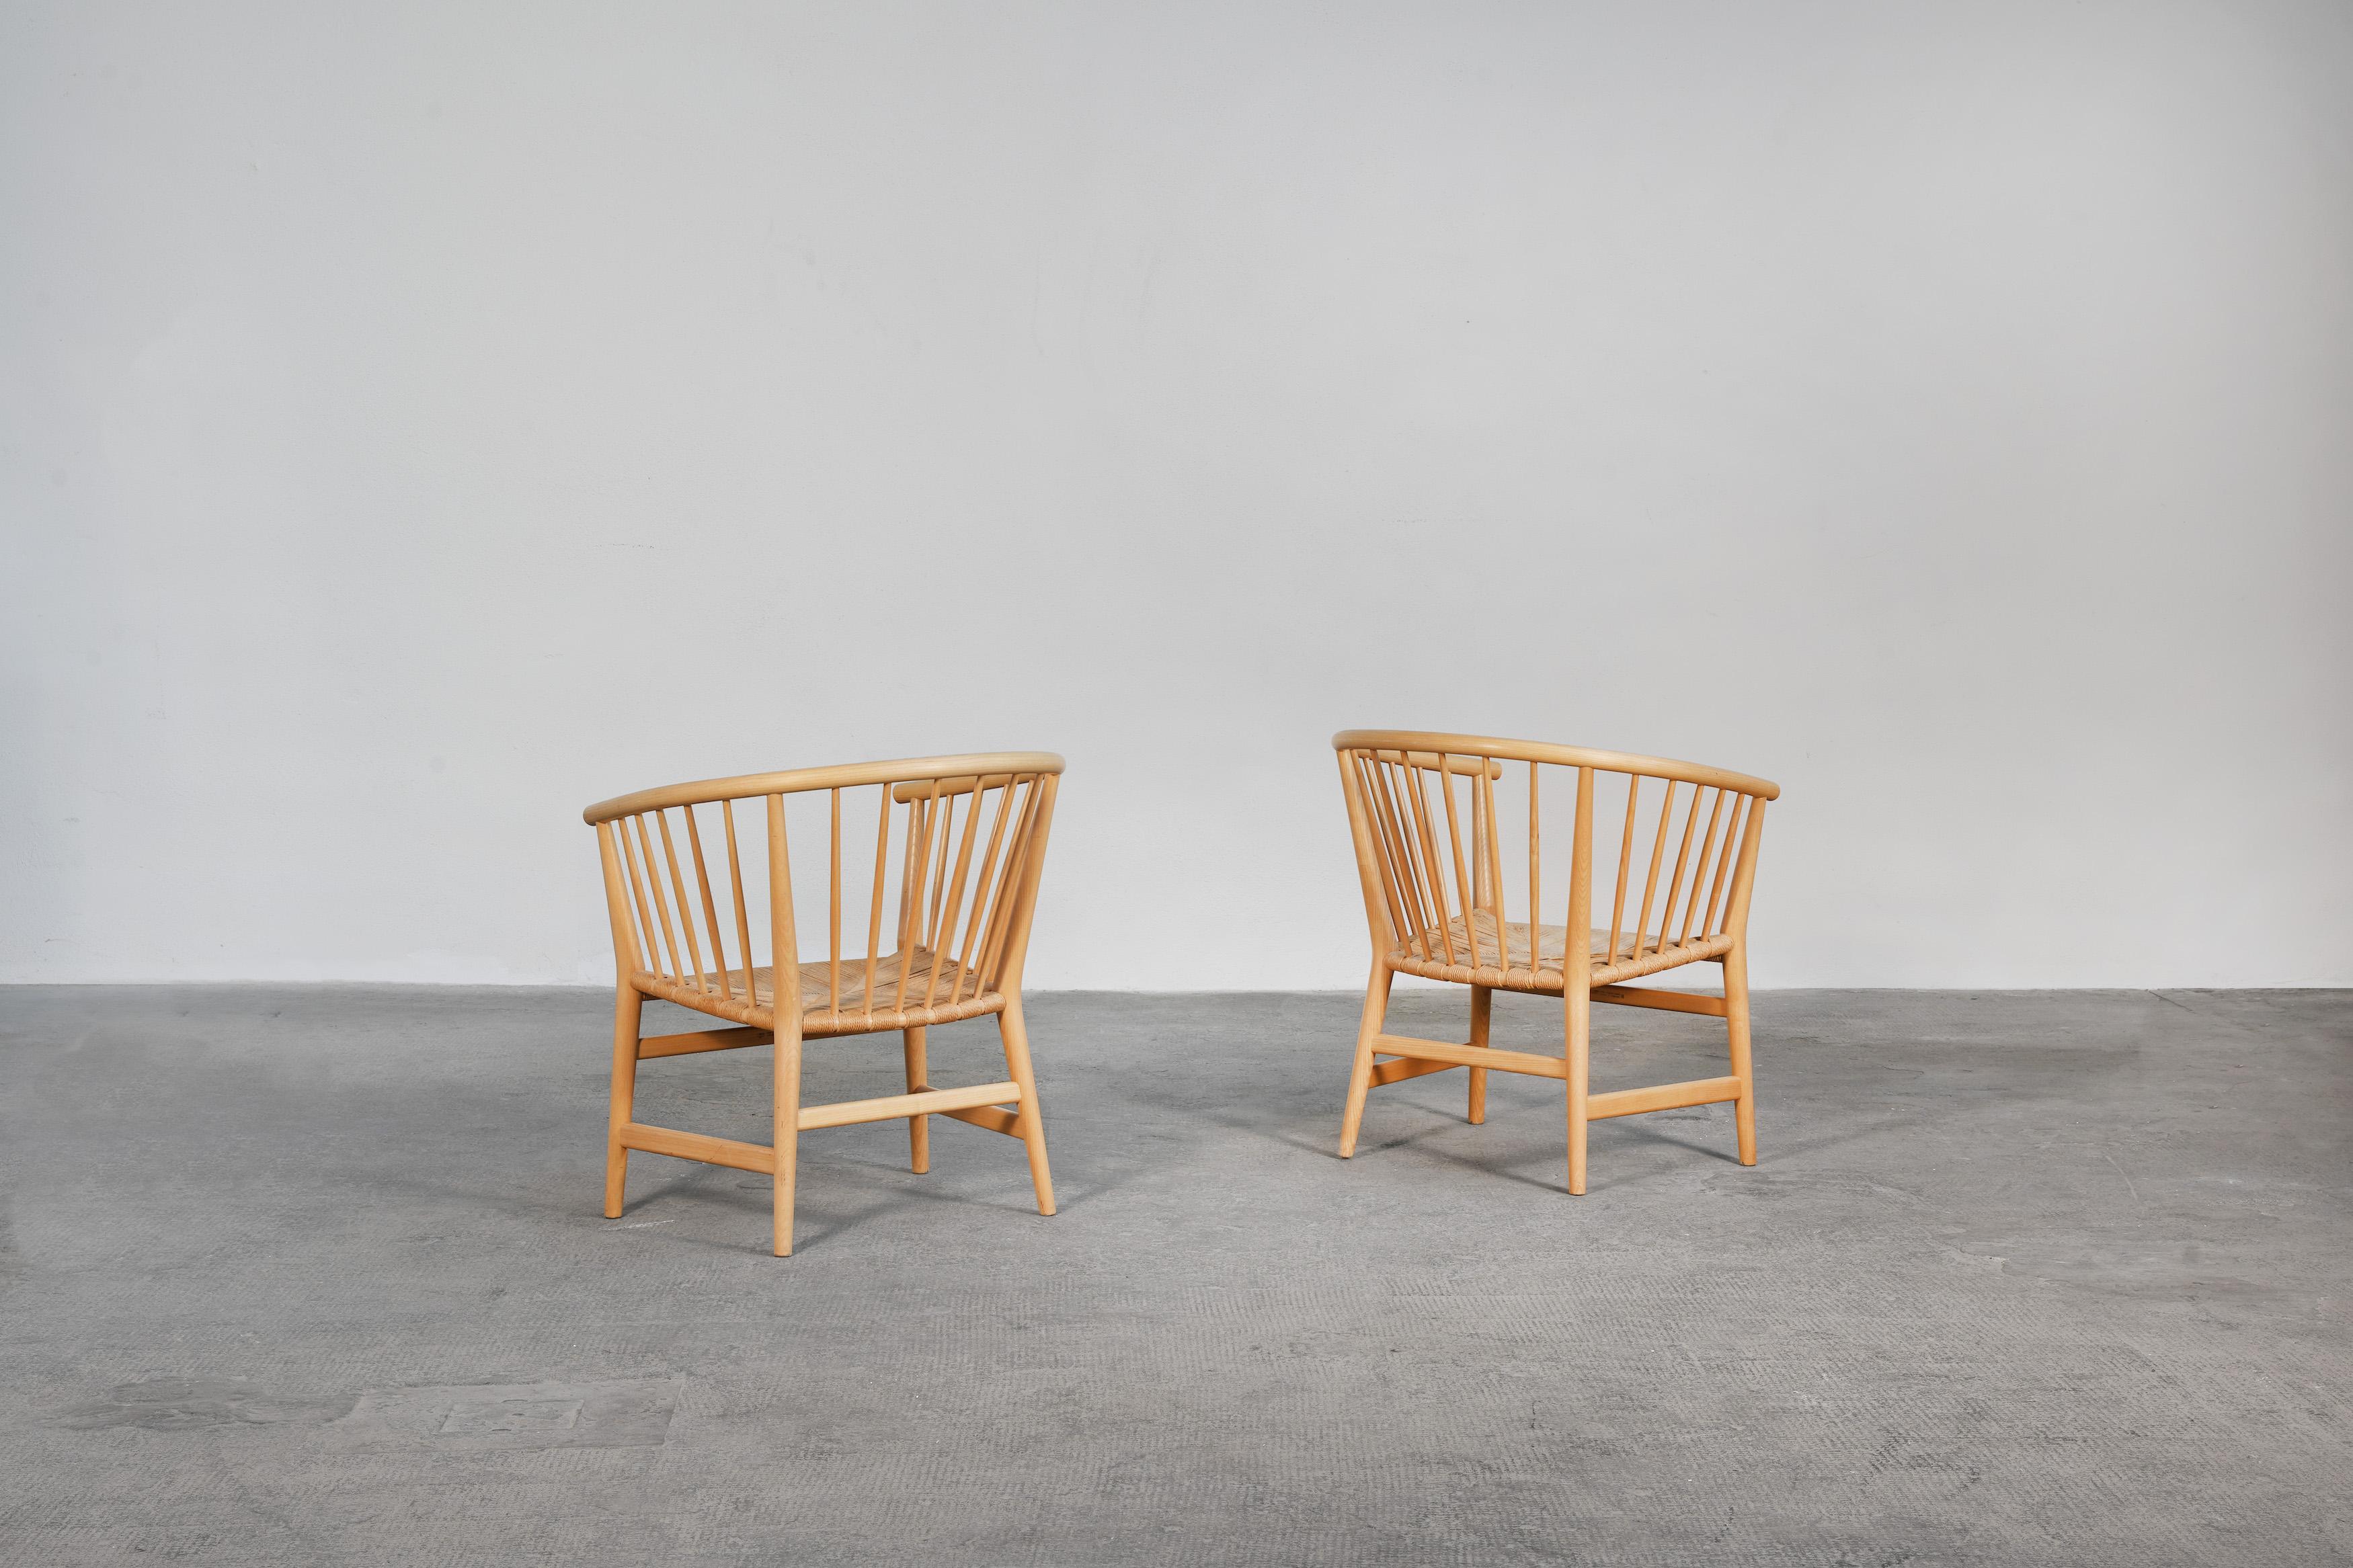 Zwei schöne Sessel, entworfen von Hans J. Wegner und hergestellt von PP Møbler in Dänemark, 1973.
Beide Stühle sind aus Eschenholz gefertigt und befinden sich in einem sehr guten Originalzustand, ohne Restaurierungen oder größere Schäden. Beide